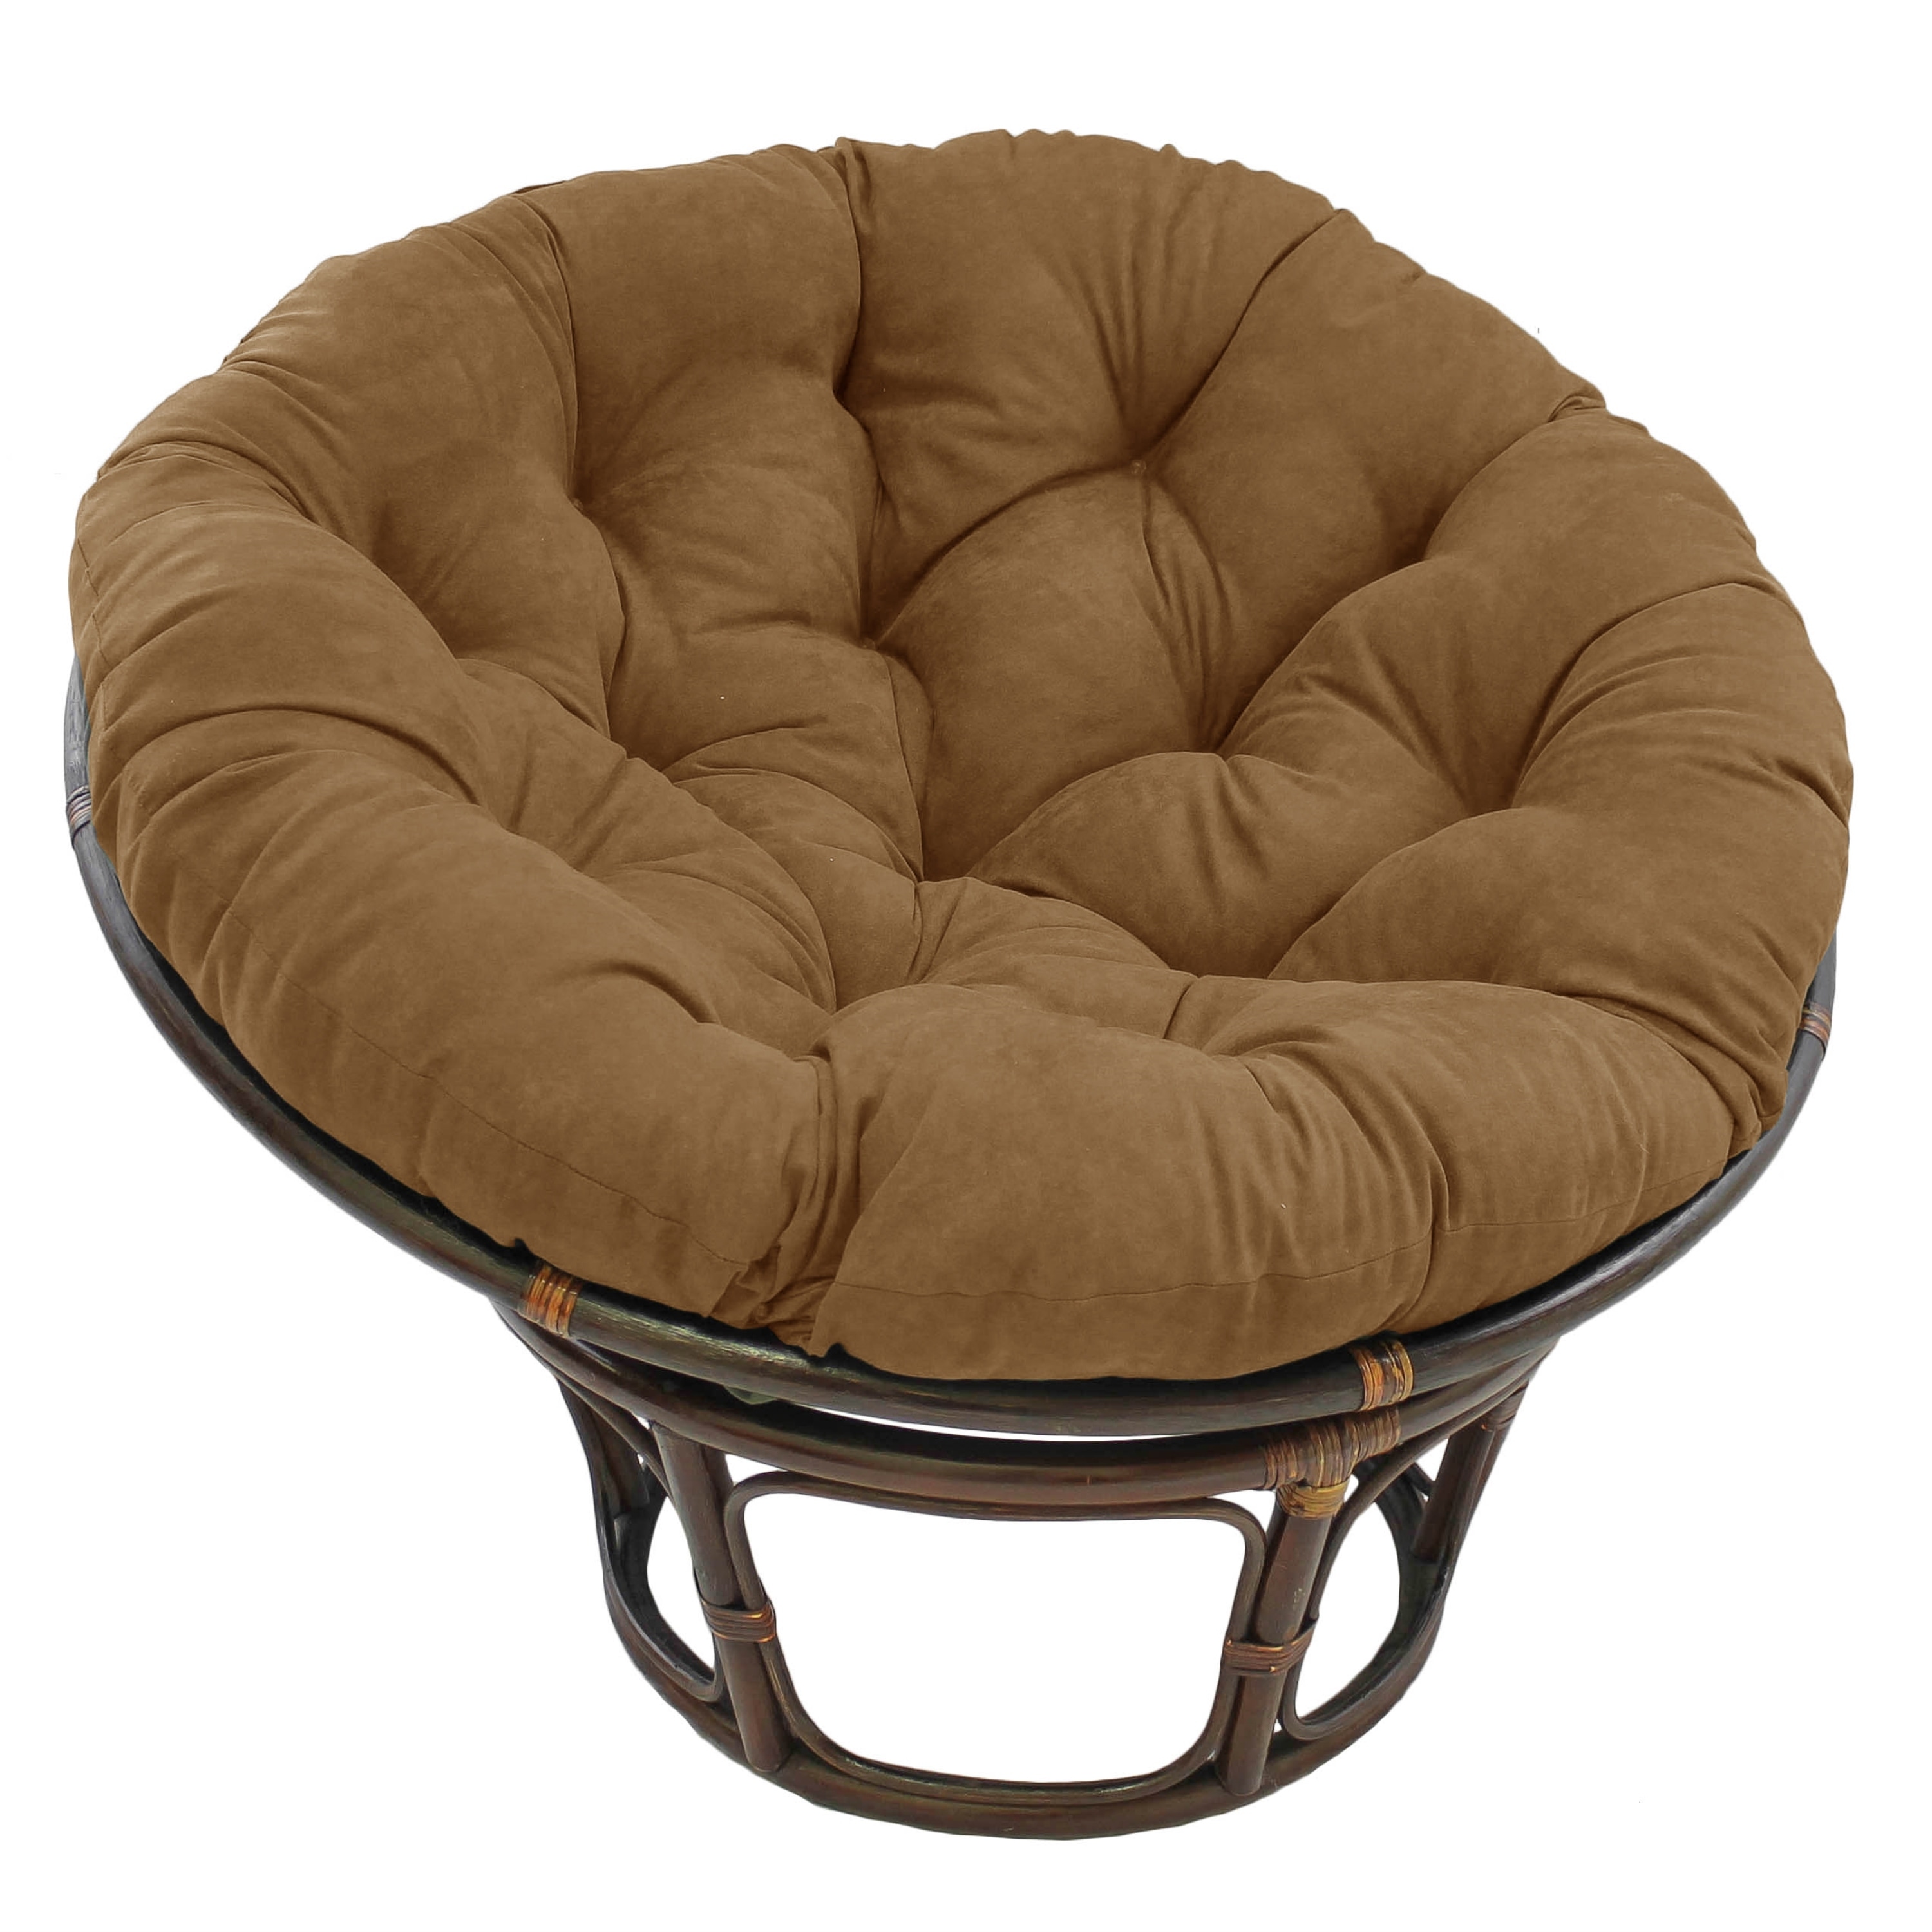 Papasan Chair Cushion, Round Papasan Cushion, Pillow for a Hanging Chair,  Round Pillow, Pillow for Swing, Garden Cushion, Different Patterns -   Israel